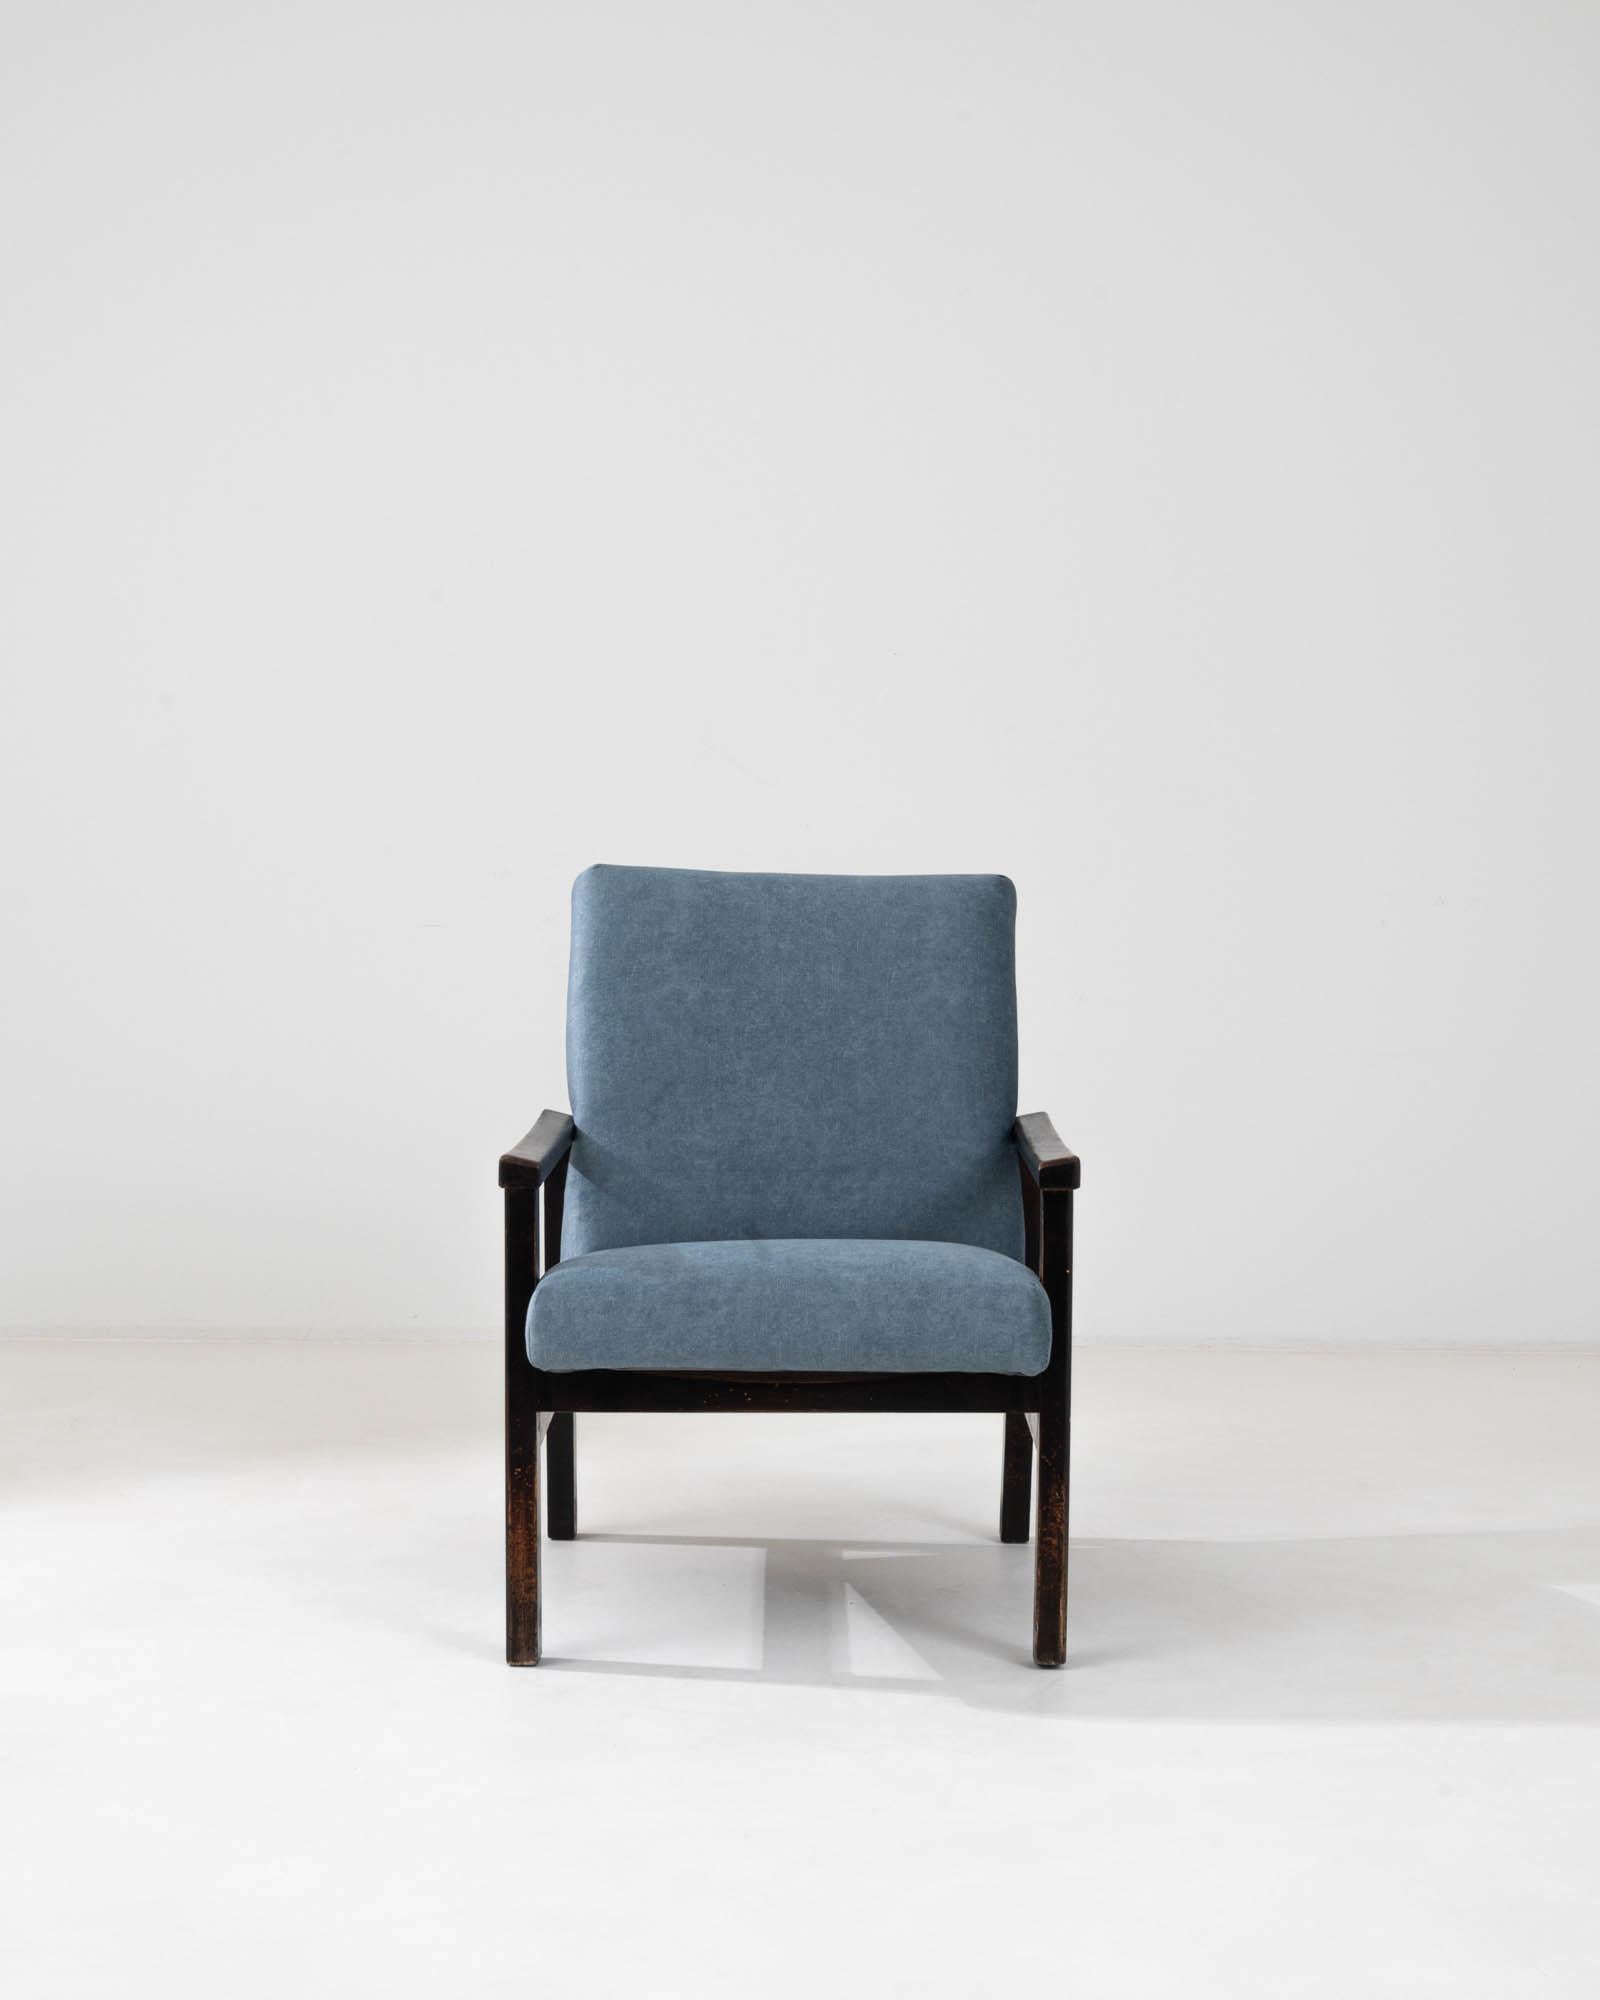 Introduisez l'essence du charme des années 1960 avec ce fauteuil tapissé tchèque, témoin d'un design et d'un confort intemporels. Le corps de la chaise est recouvert d'un revêtement bleu océan serein qui évoque à la fois le calme et la